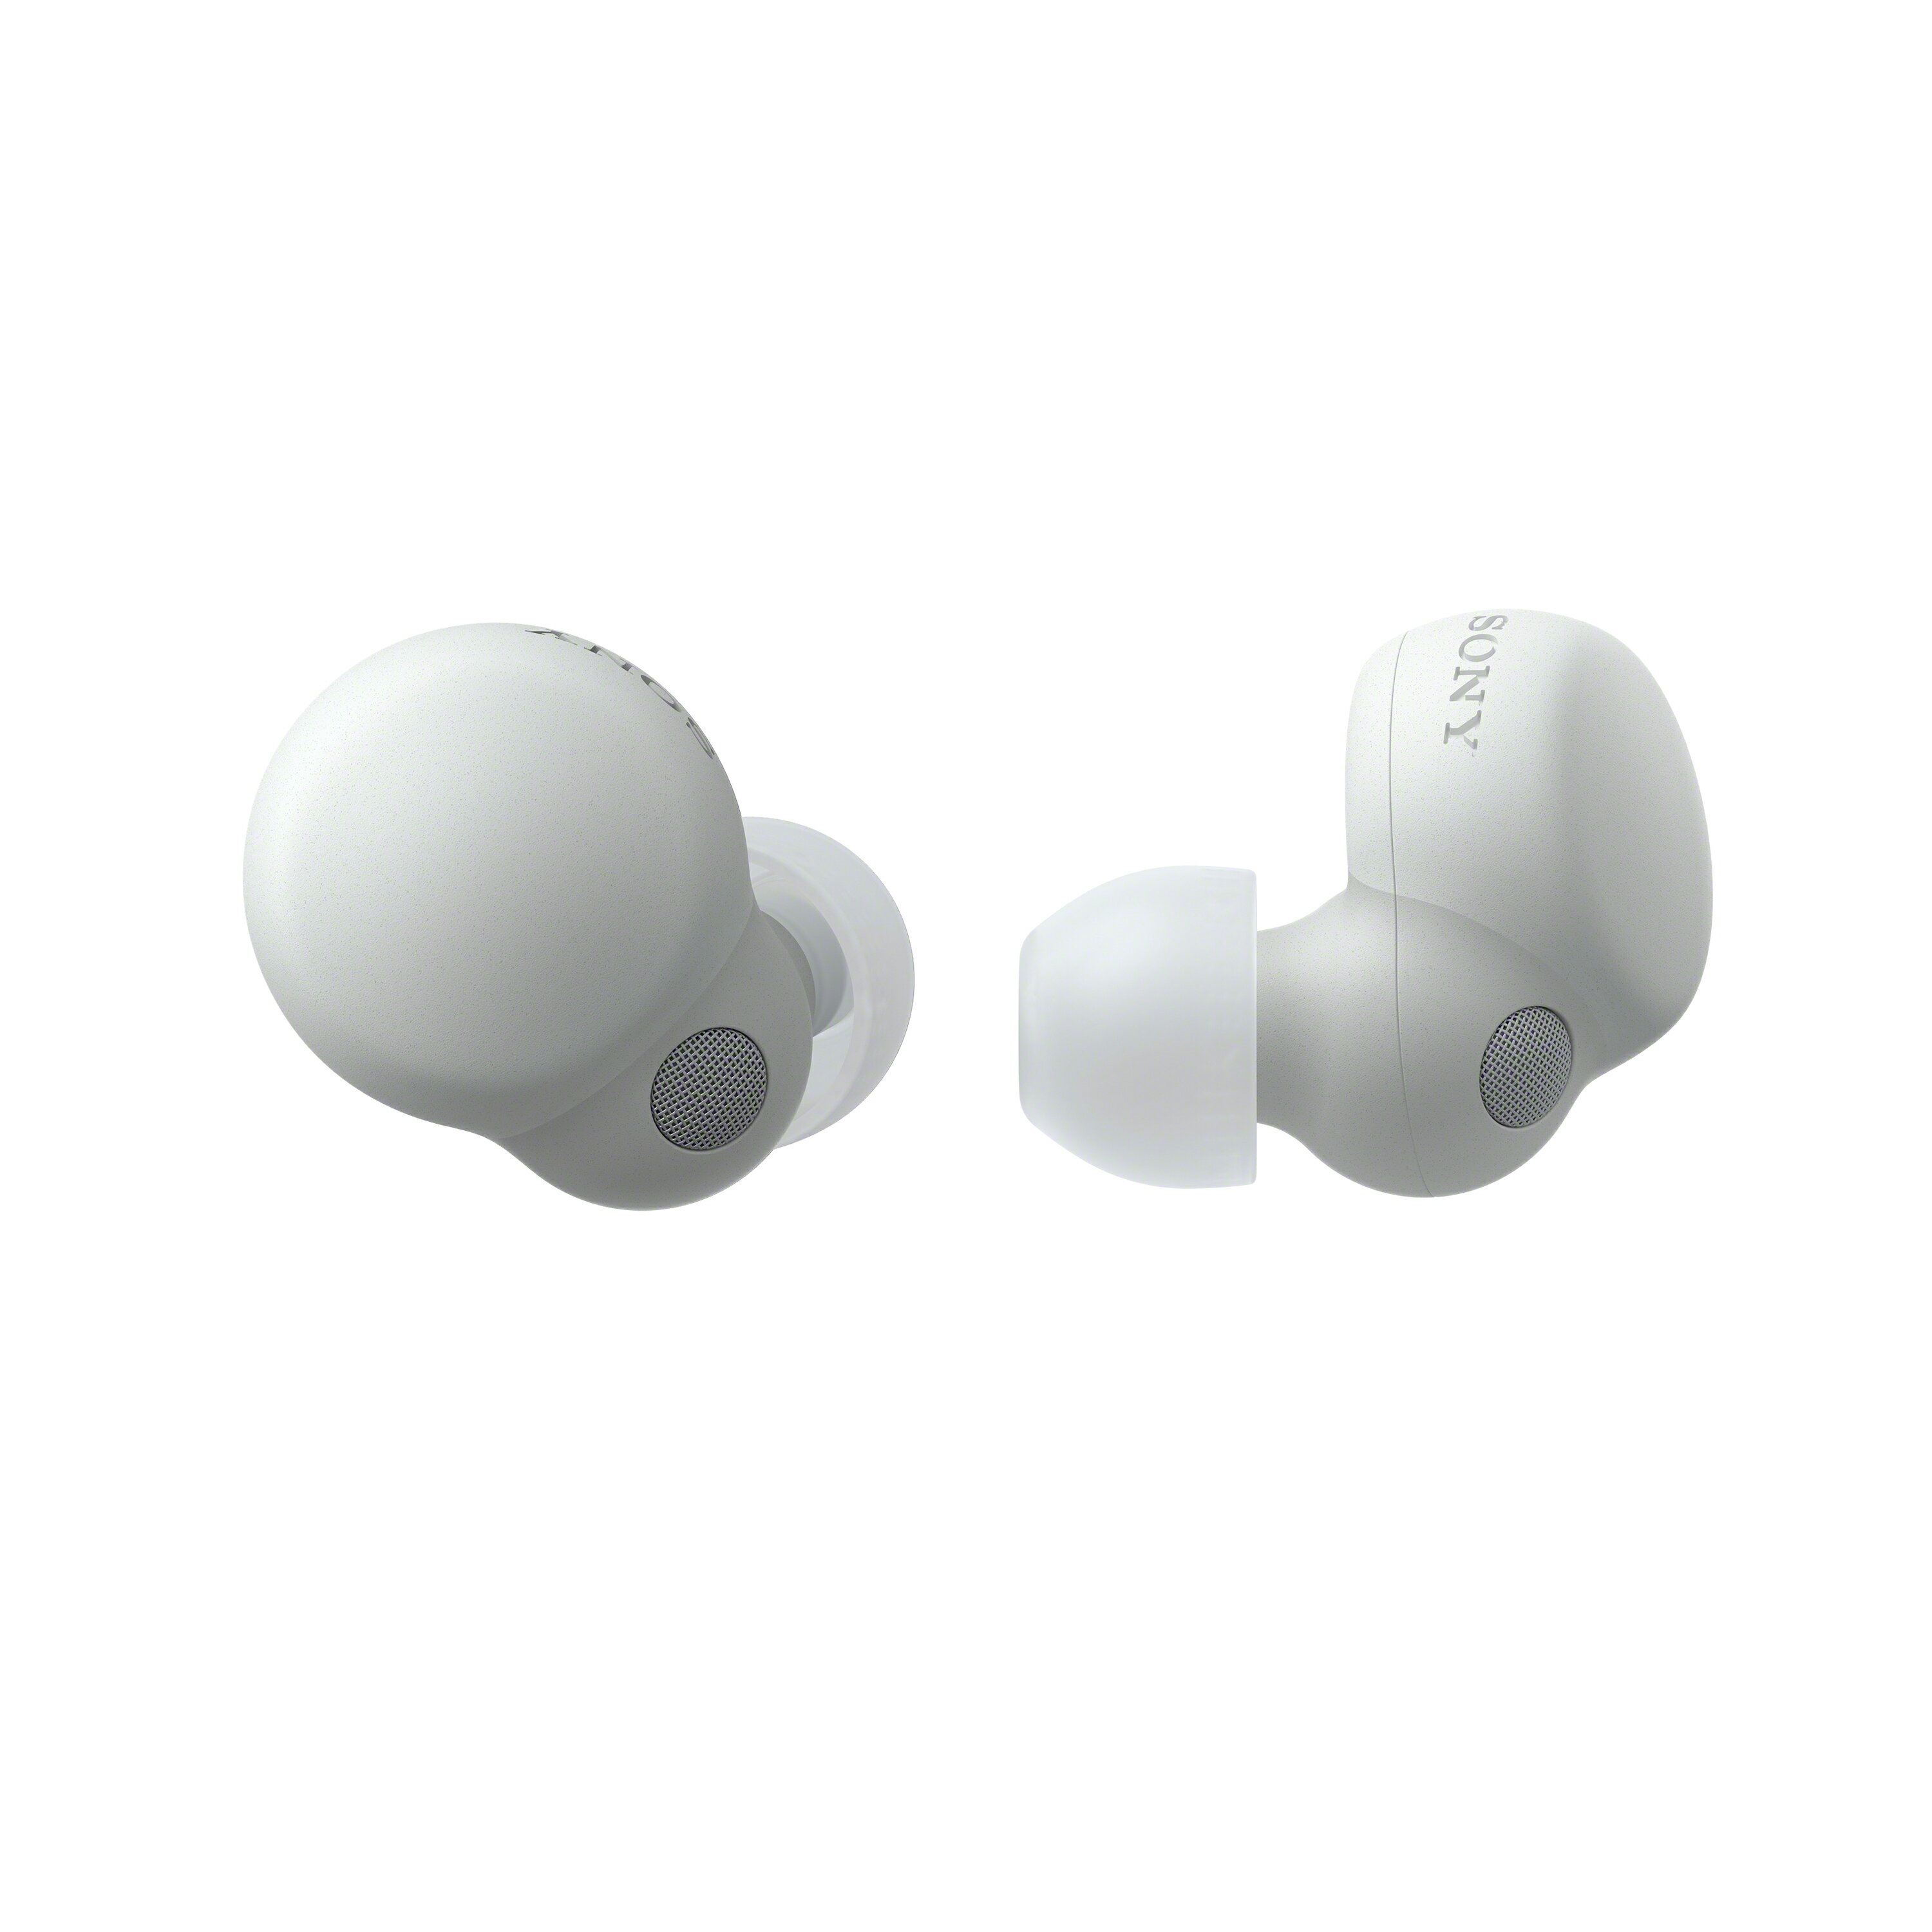 SONY WF-LS900N 真無線防水降噪入耳式藍牙耳機公司貨註冊保固18個月